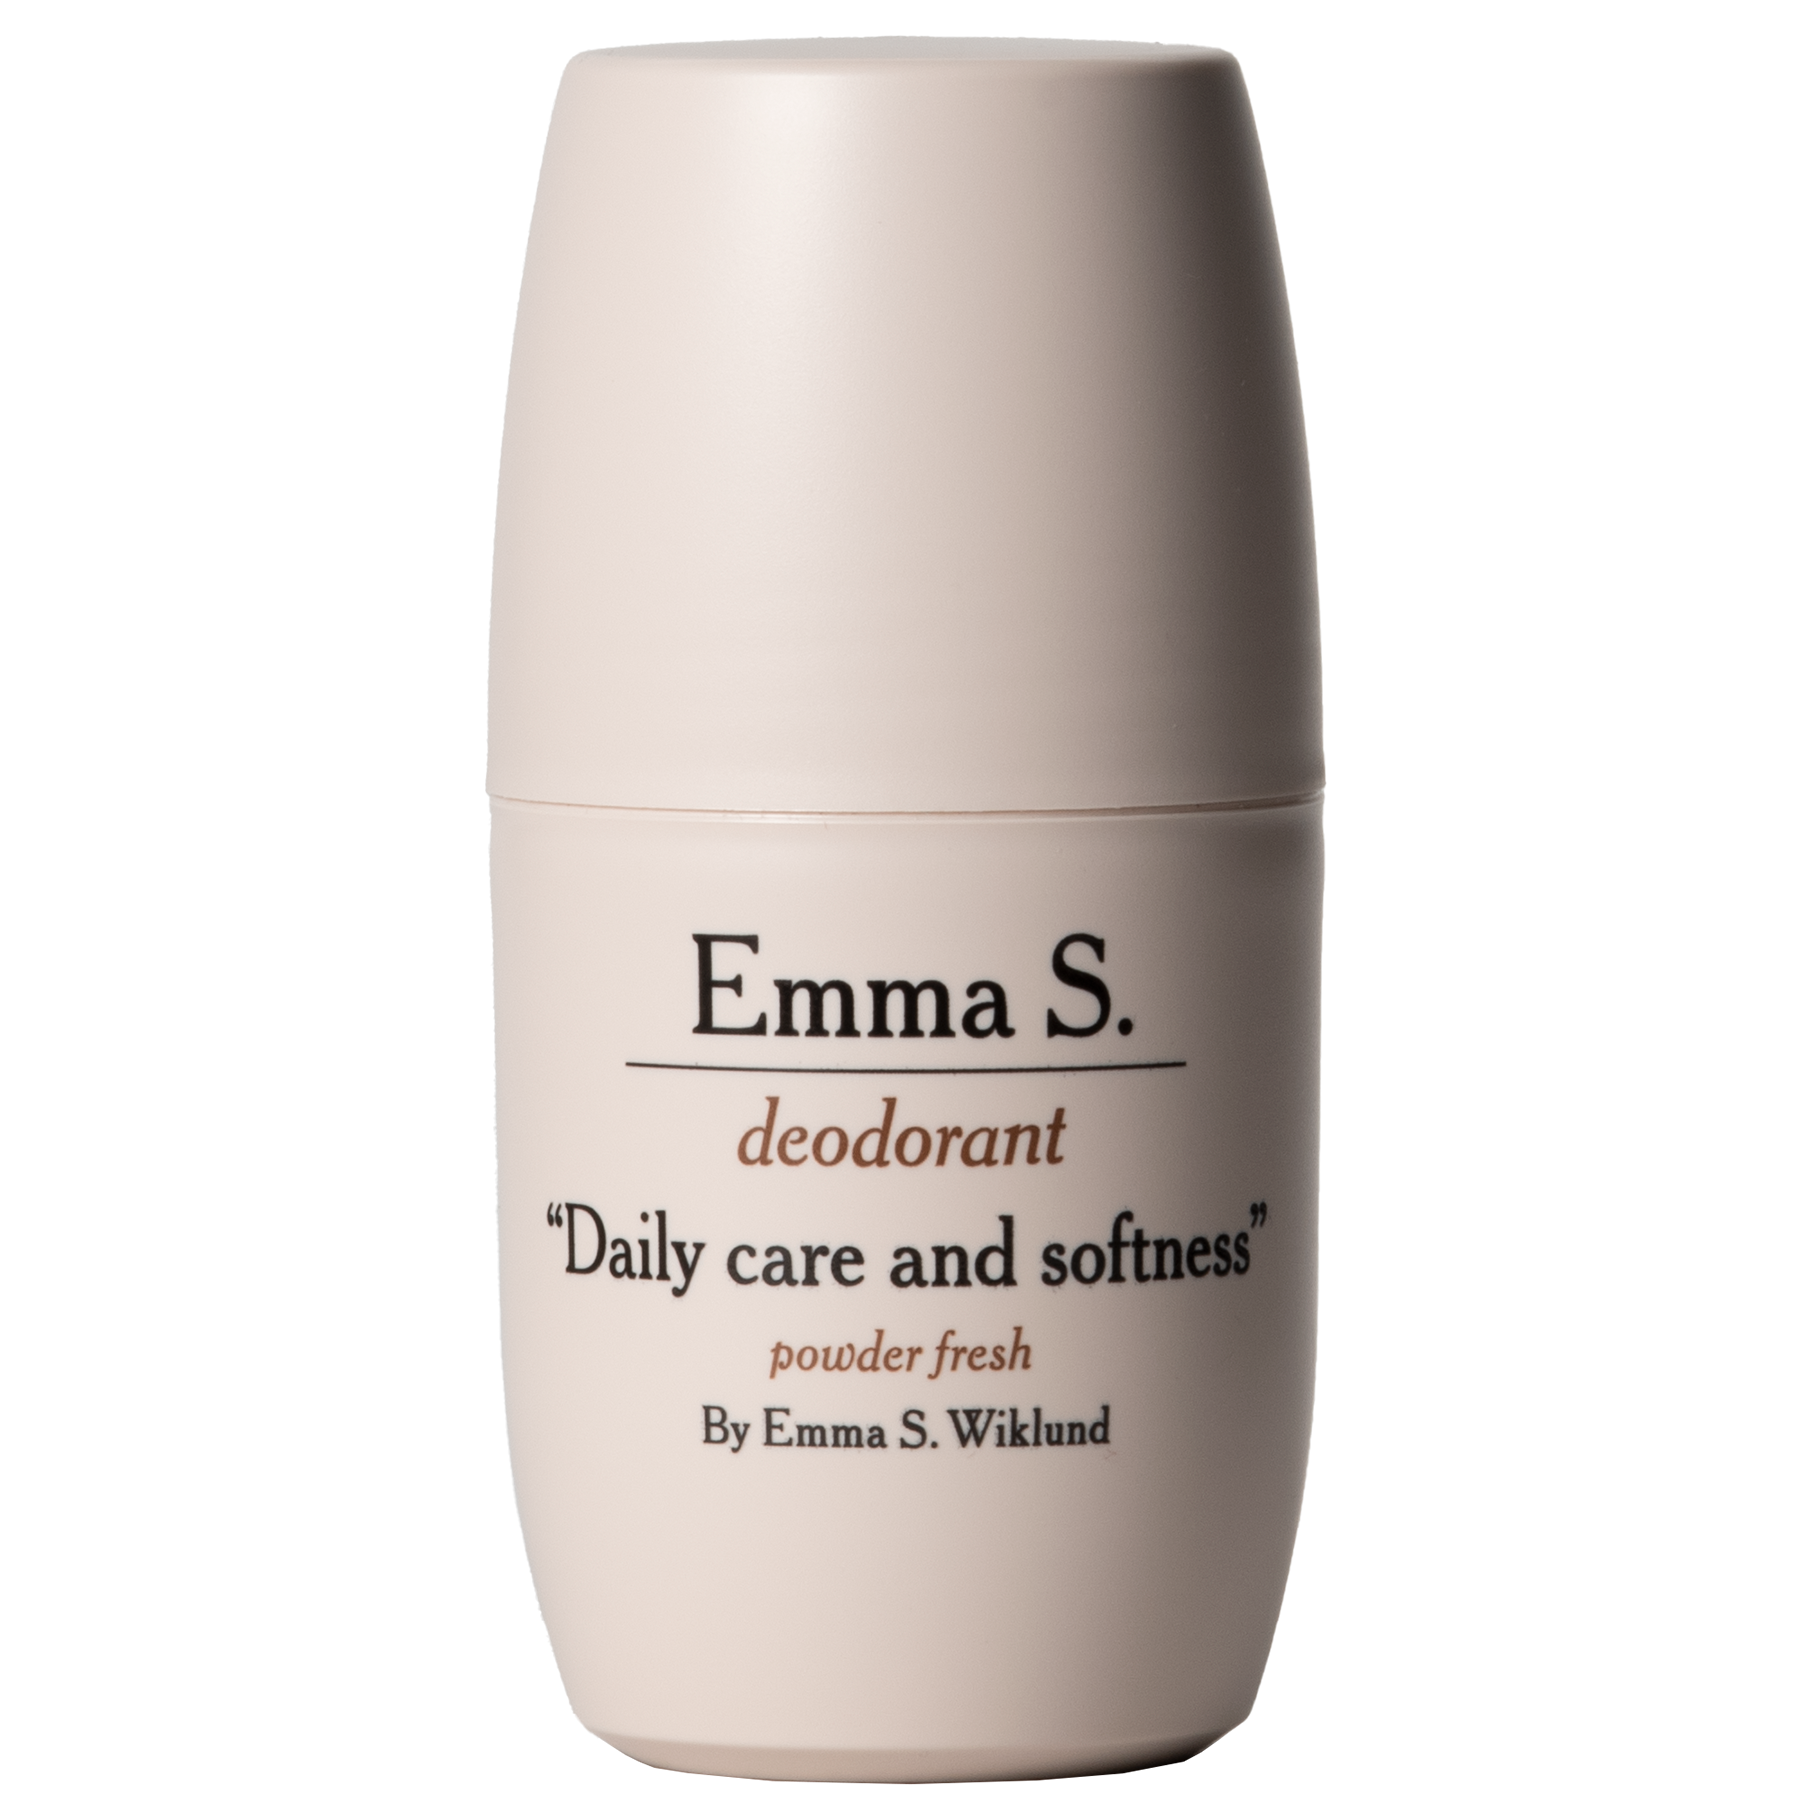 Emma S. Deodorant Powder Fresh 50 ml